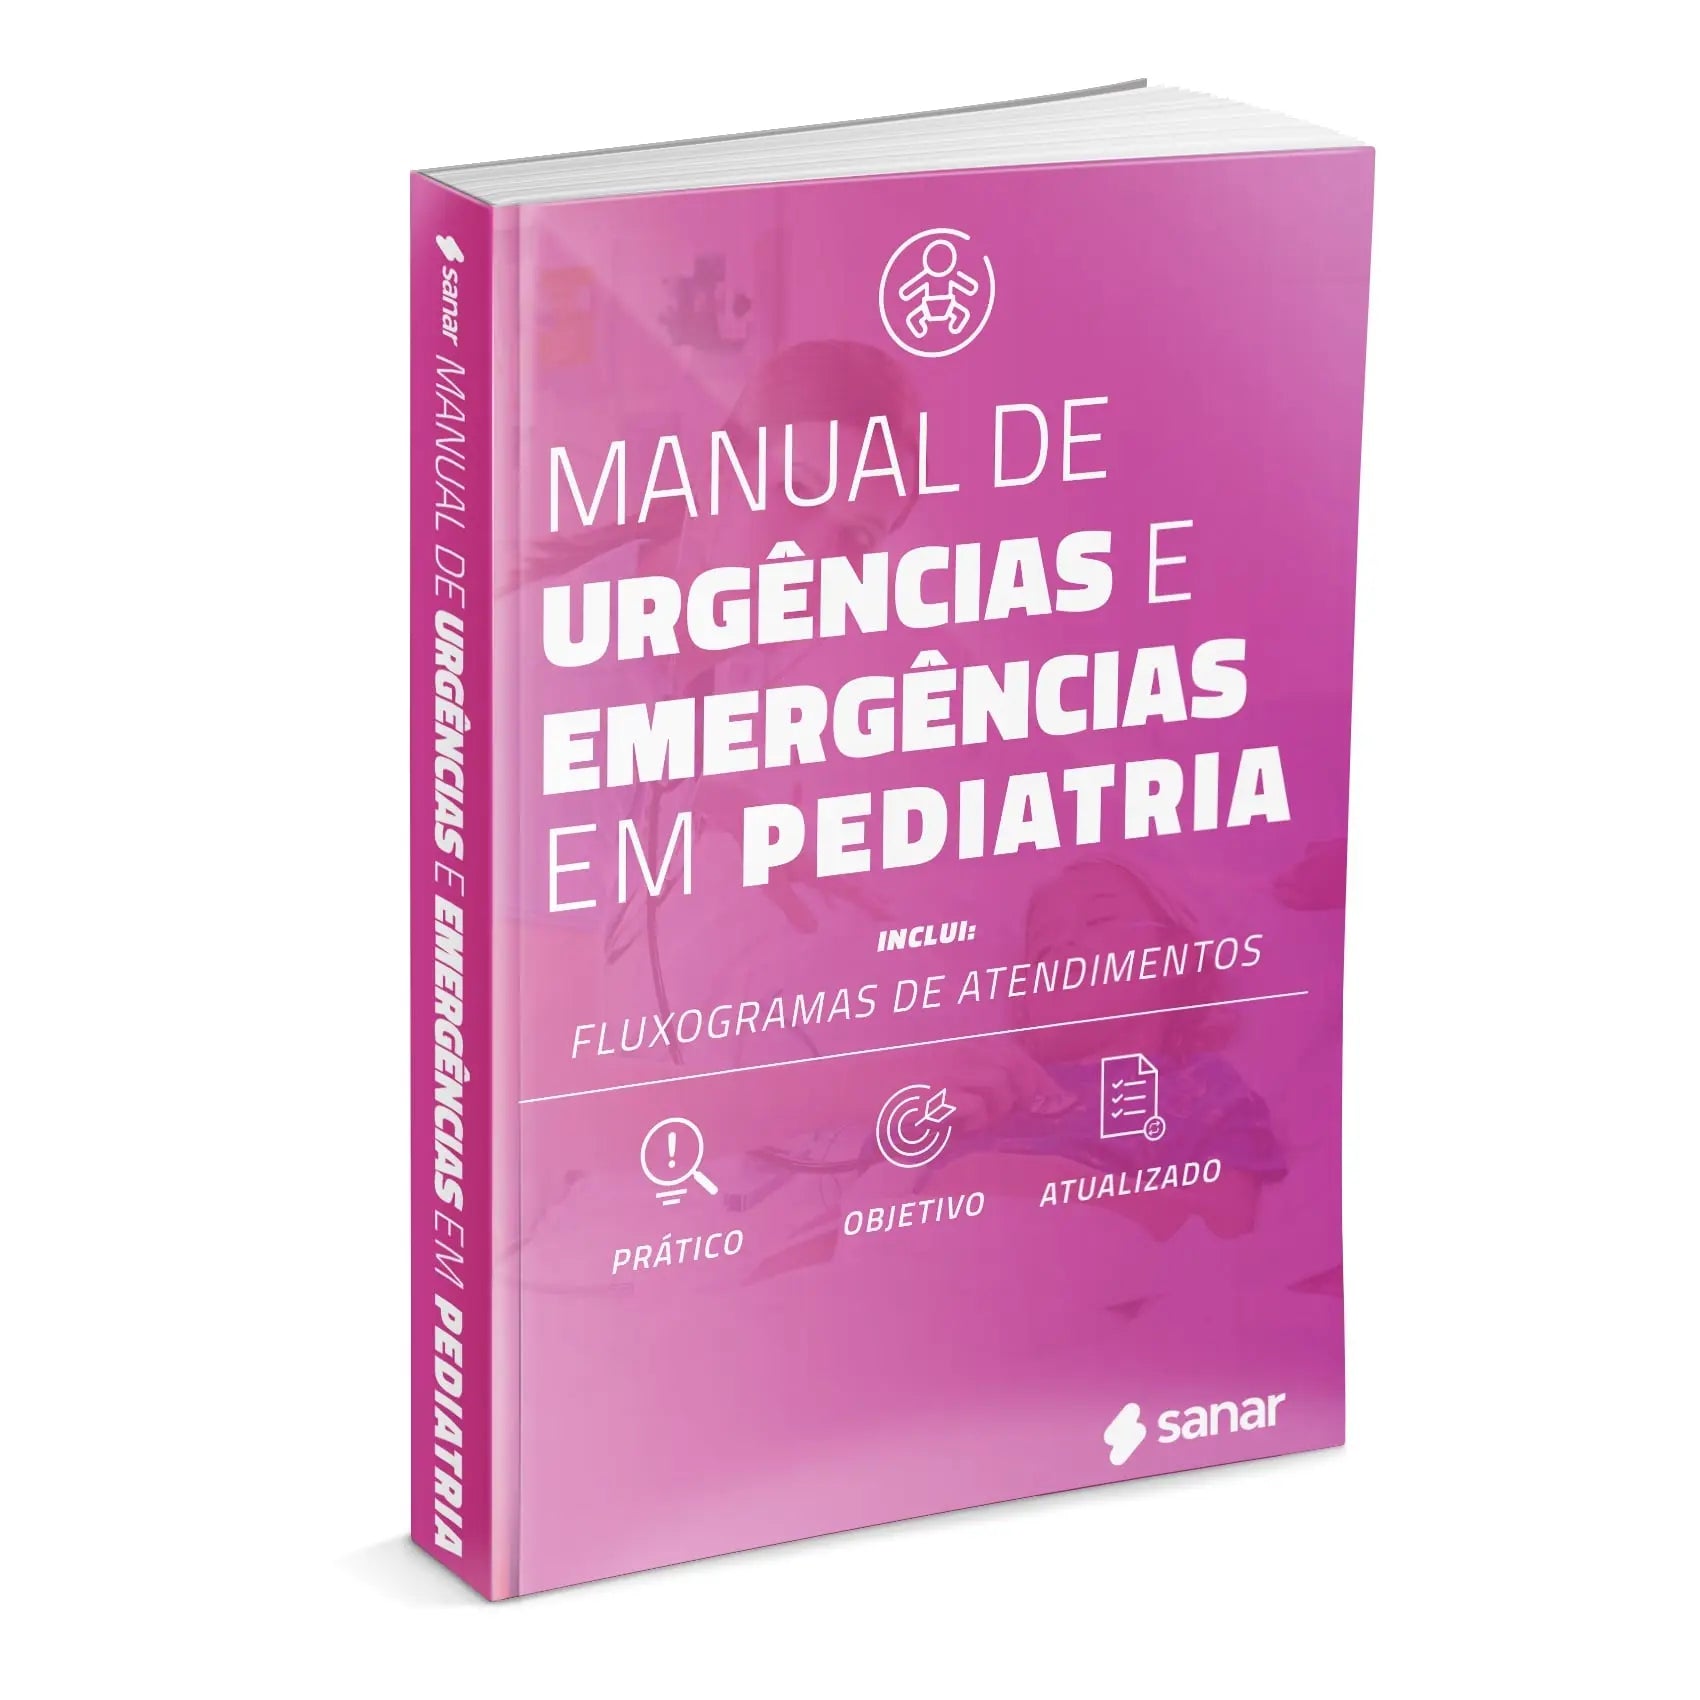 Imagem do livro Manual de Urgências e Emergências em Pediatria